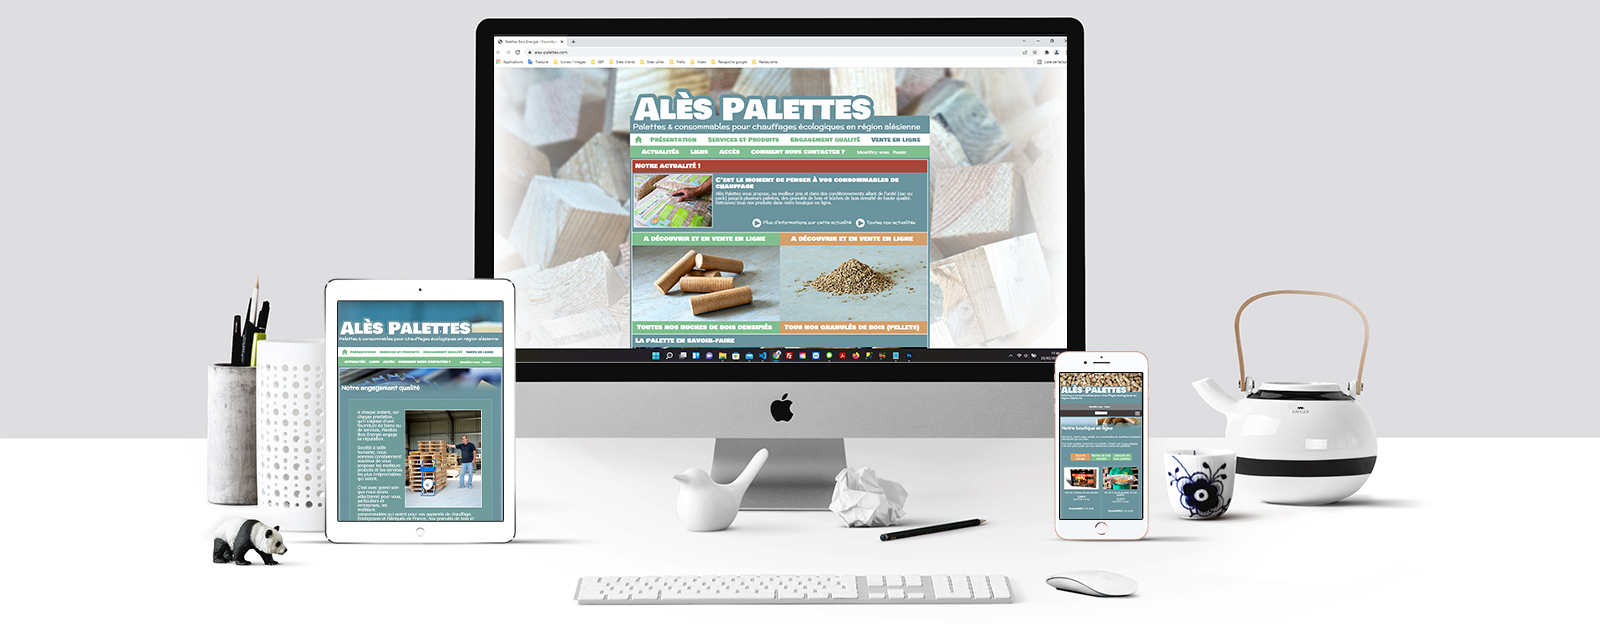 Le site de Alès palettes sur un écran Mac, un écran de tablette et un écran d'Iphone